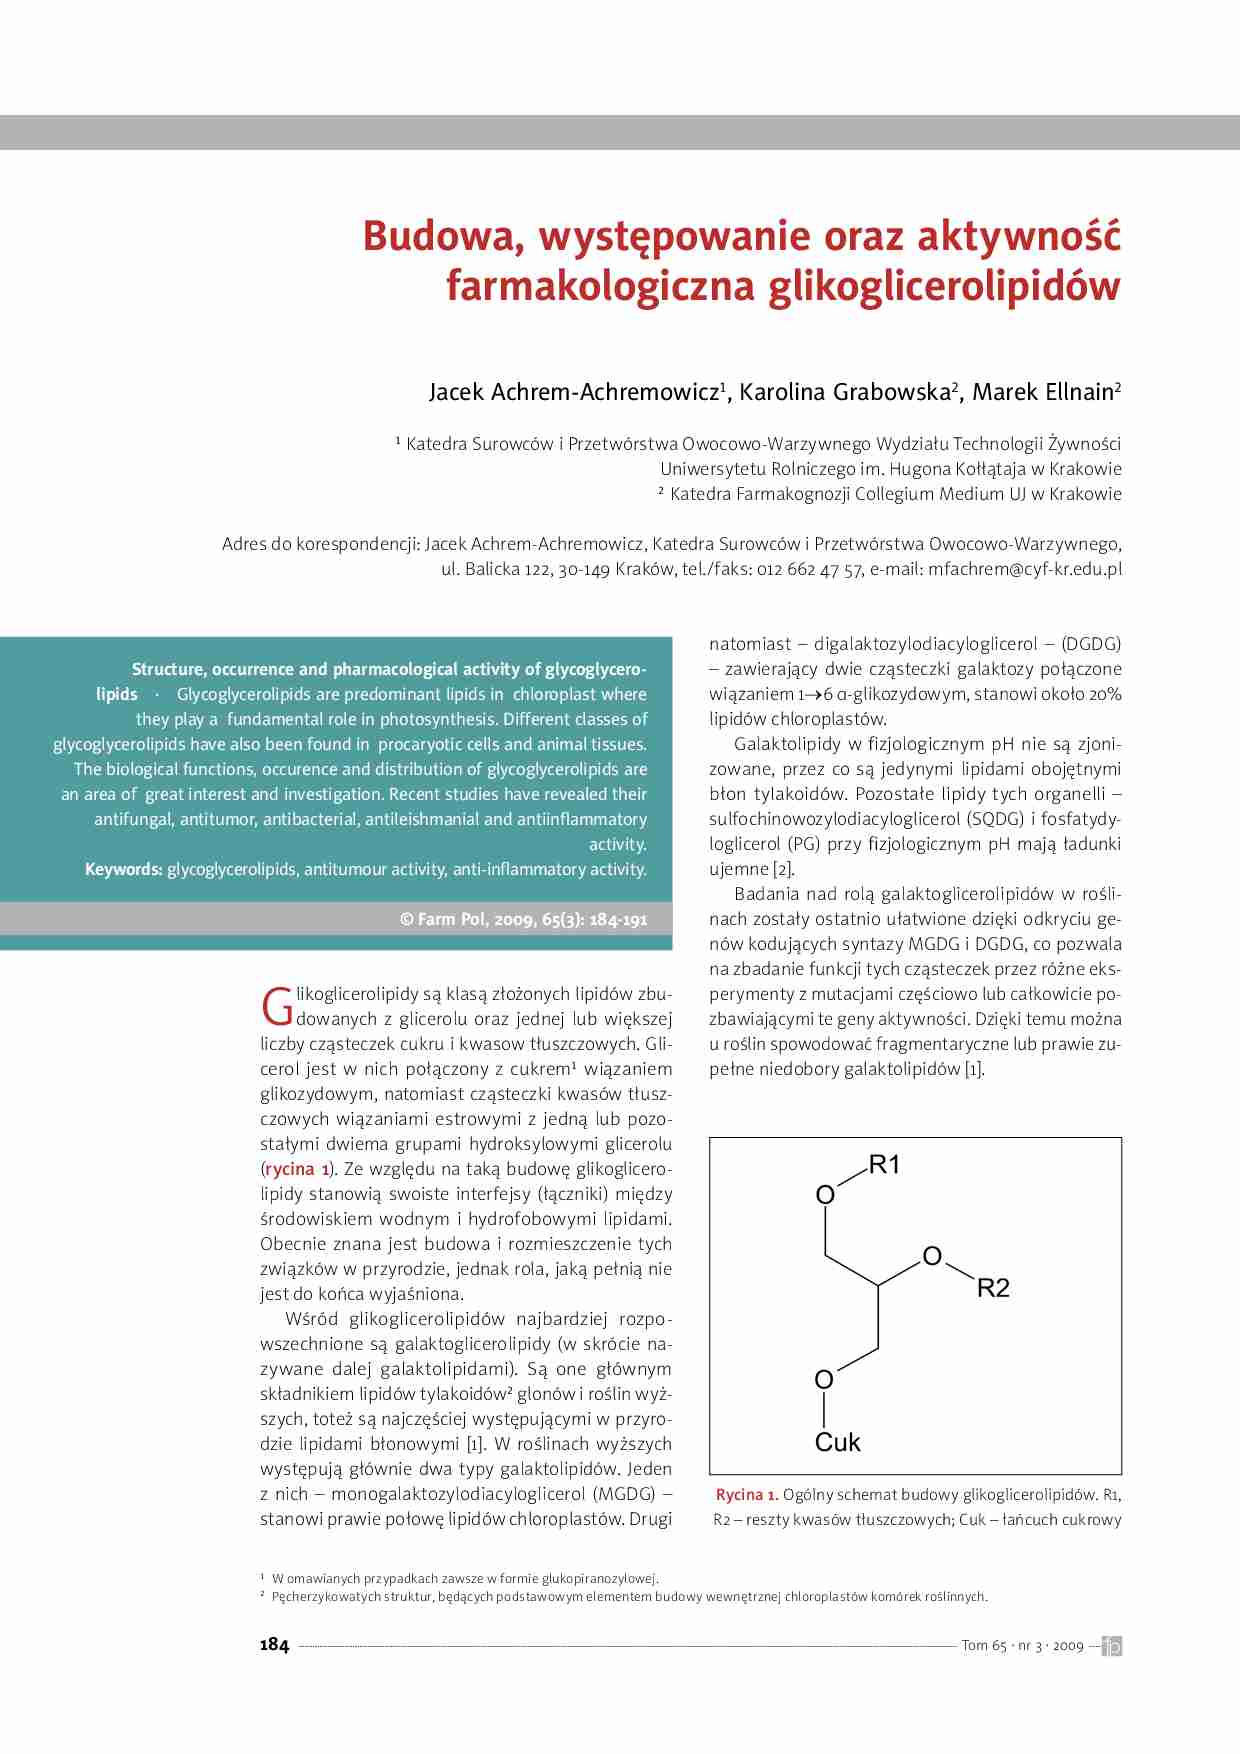 Glikoglicerolipidy - strona 1